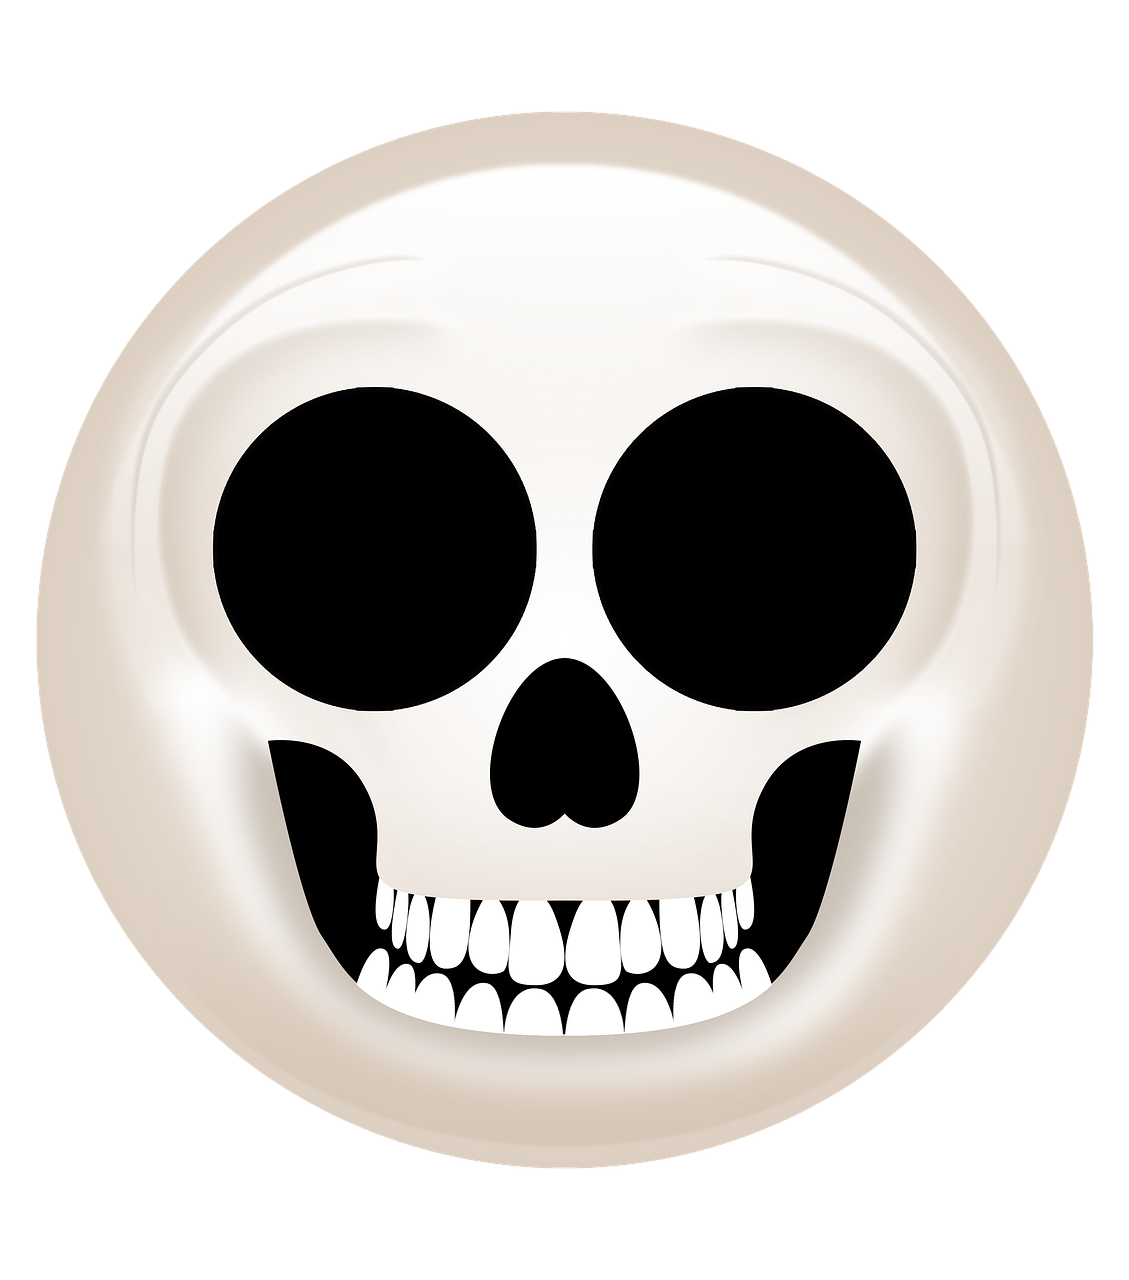 💀 meaning| Skull emoji